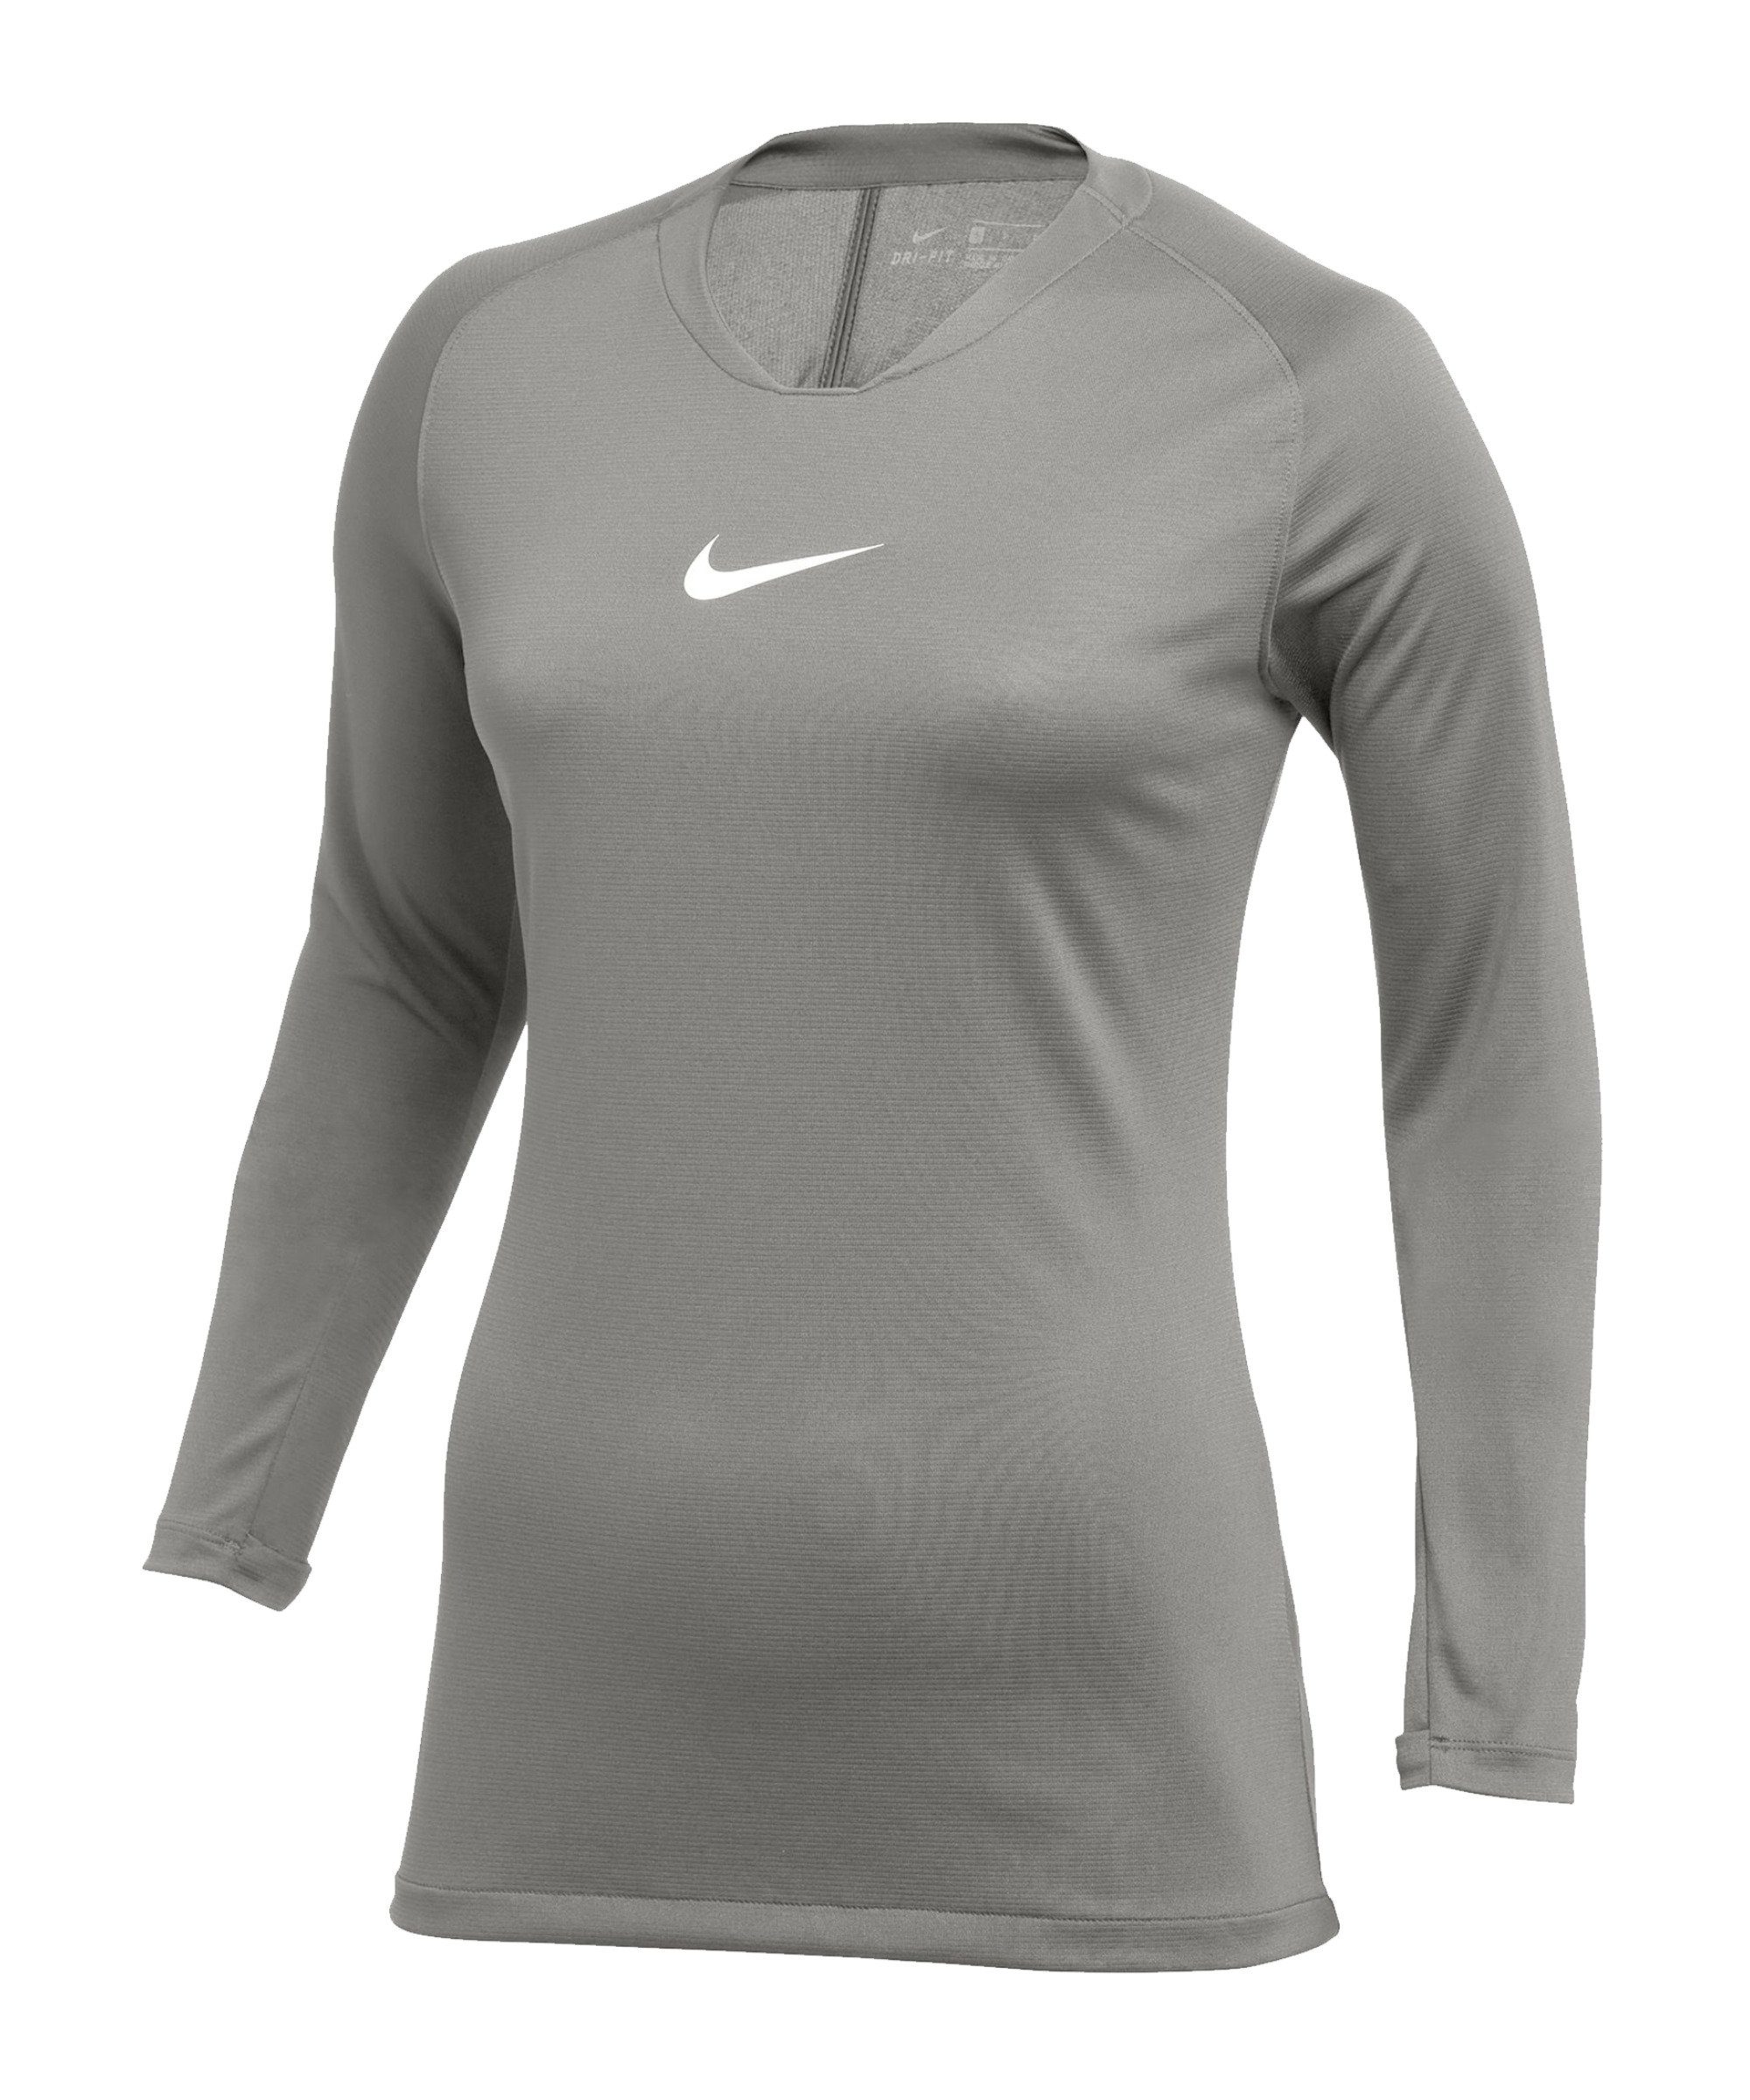 grauweiss Park Funktionsshirt default Damen Nike Layer First